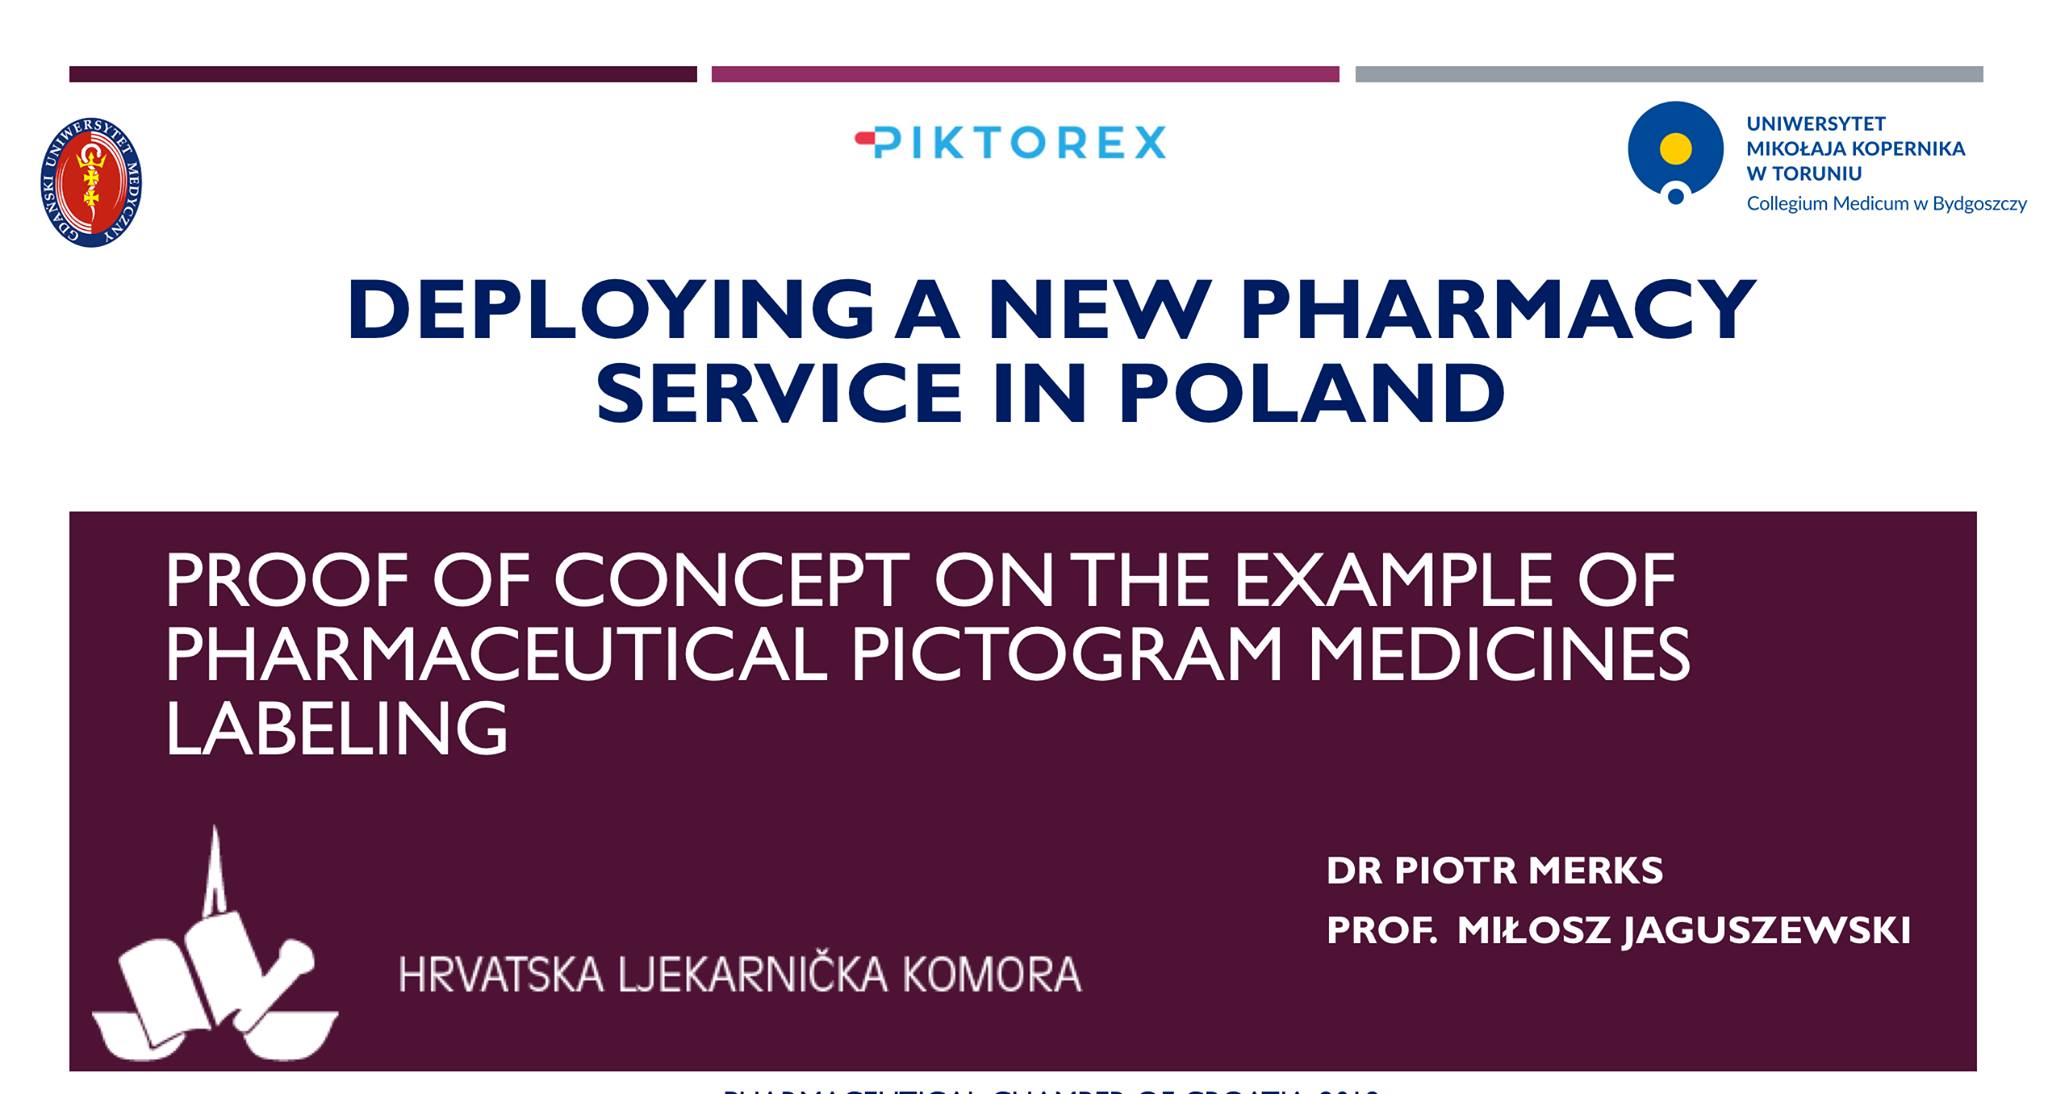 PIKTOREX - kompleksowe rozwiązania w zakresie opieki farmaceutycznej  